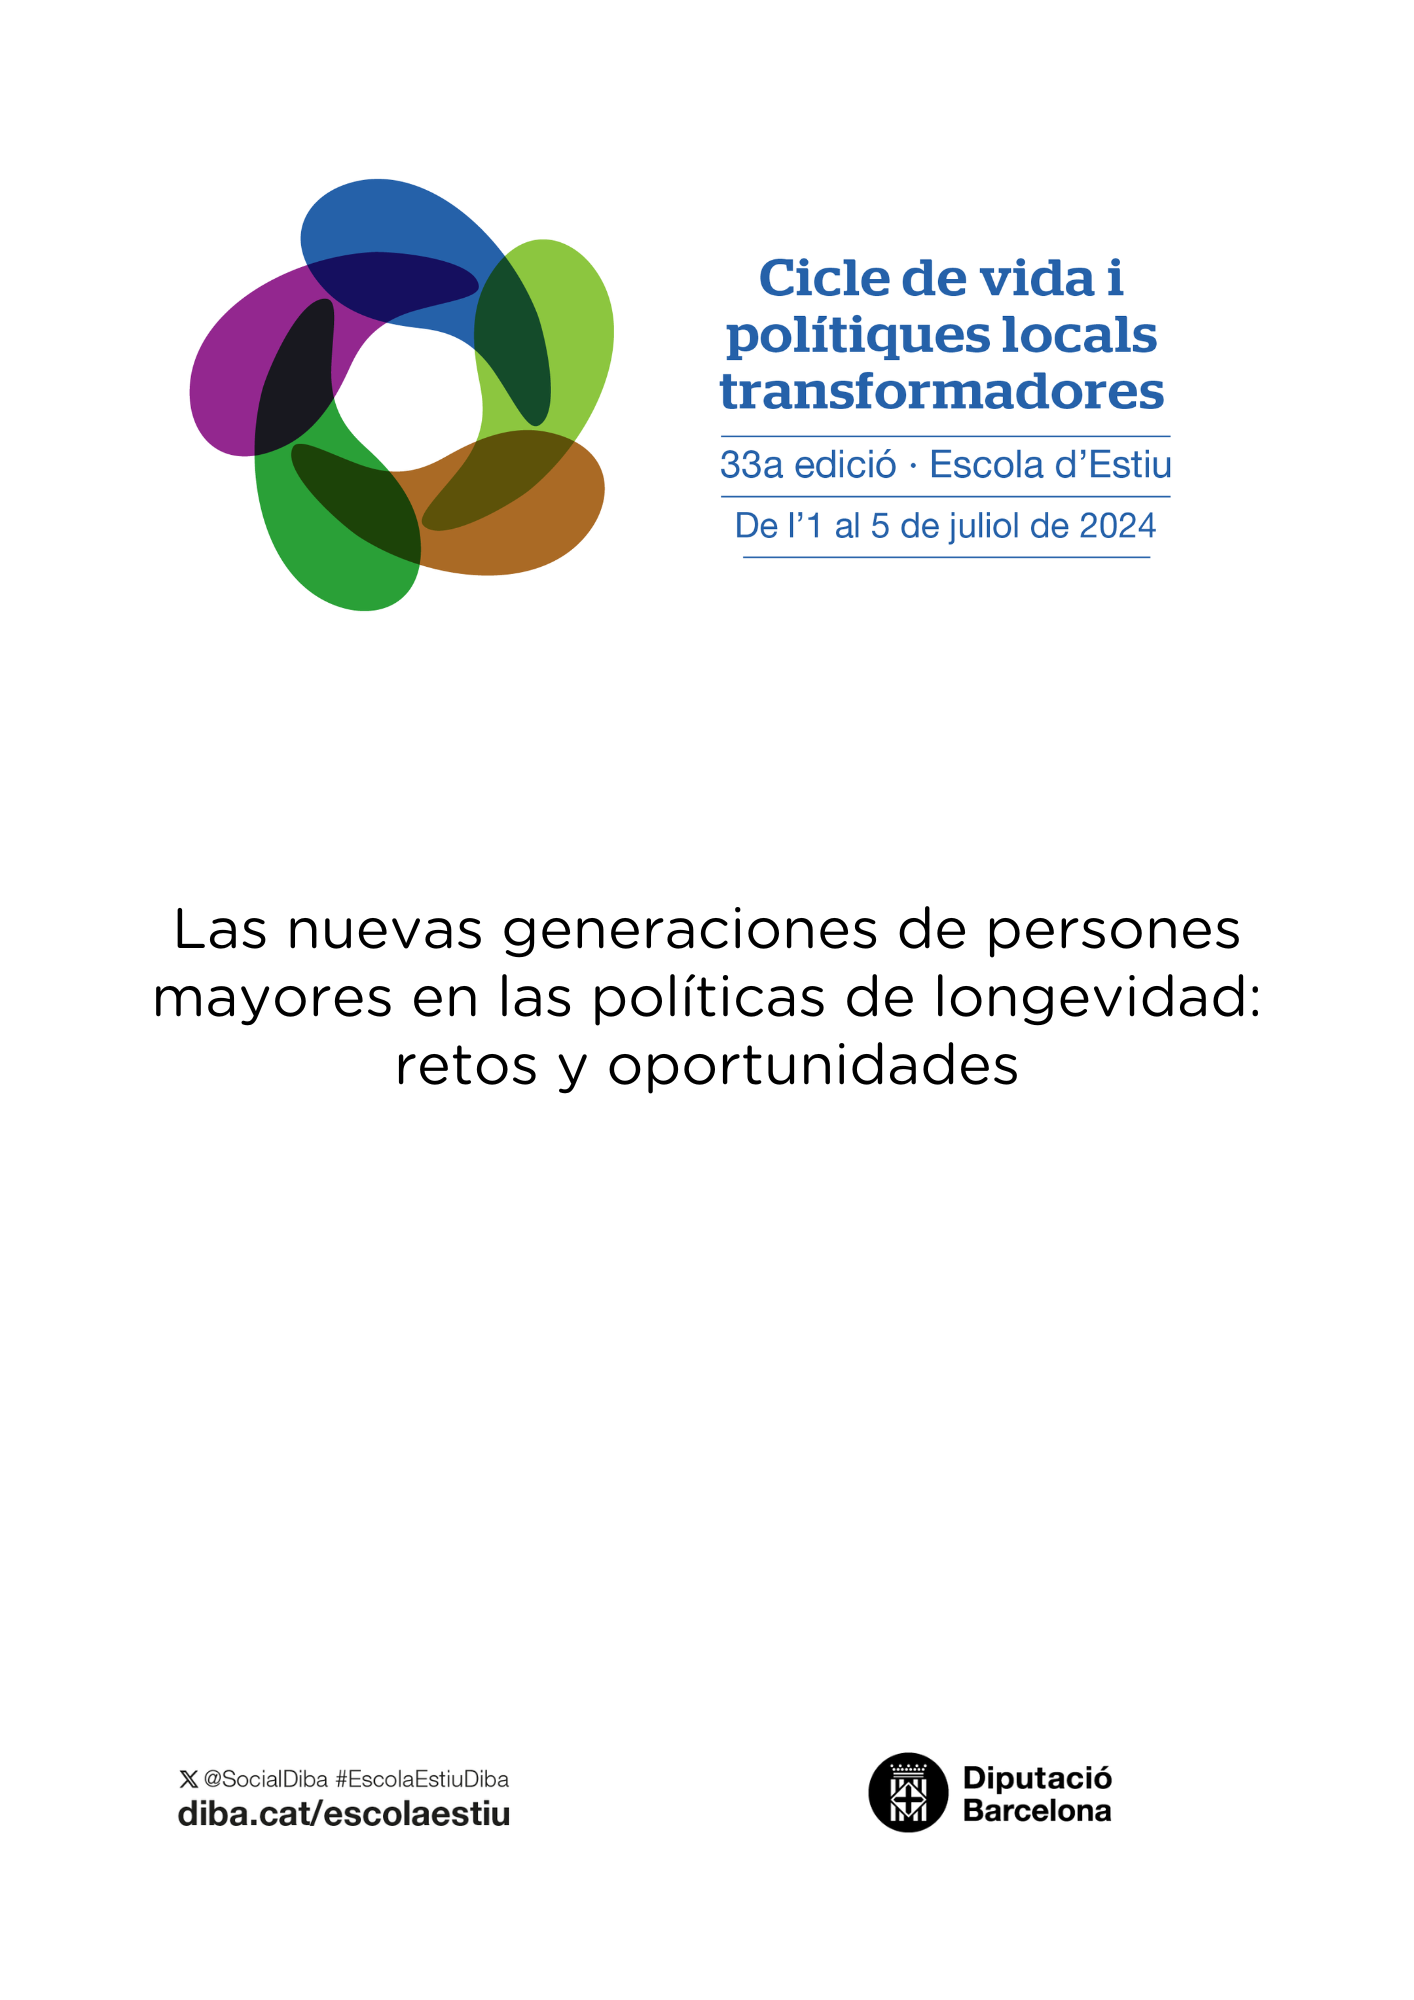 Cartel anunciador de la Escuela de Verano Área de Sostenibilidad Social, Ciclo de Vida y Comunidad de la Diputación de Barcelona